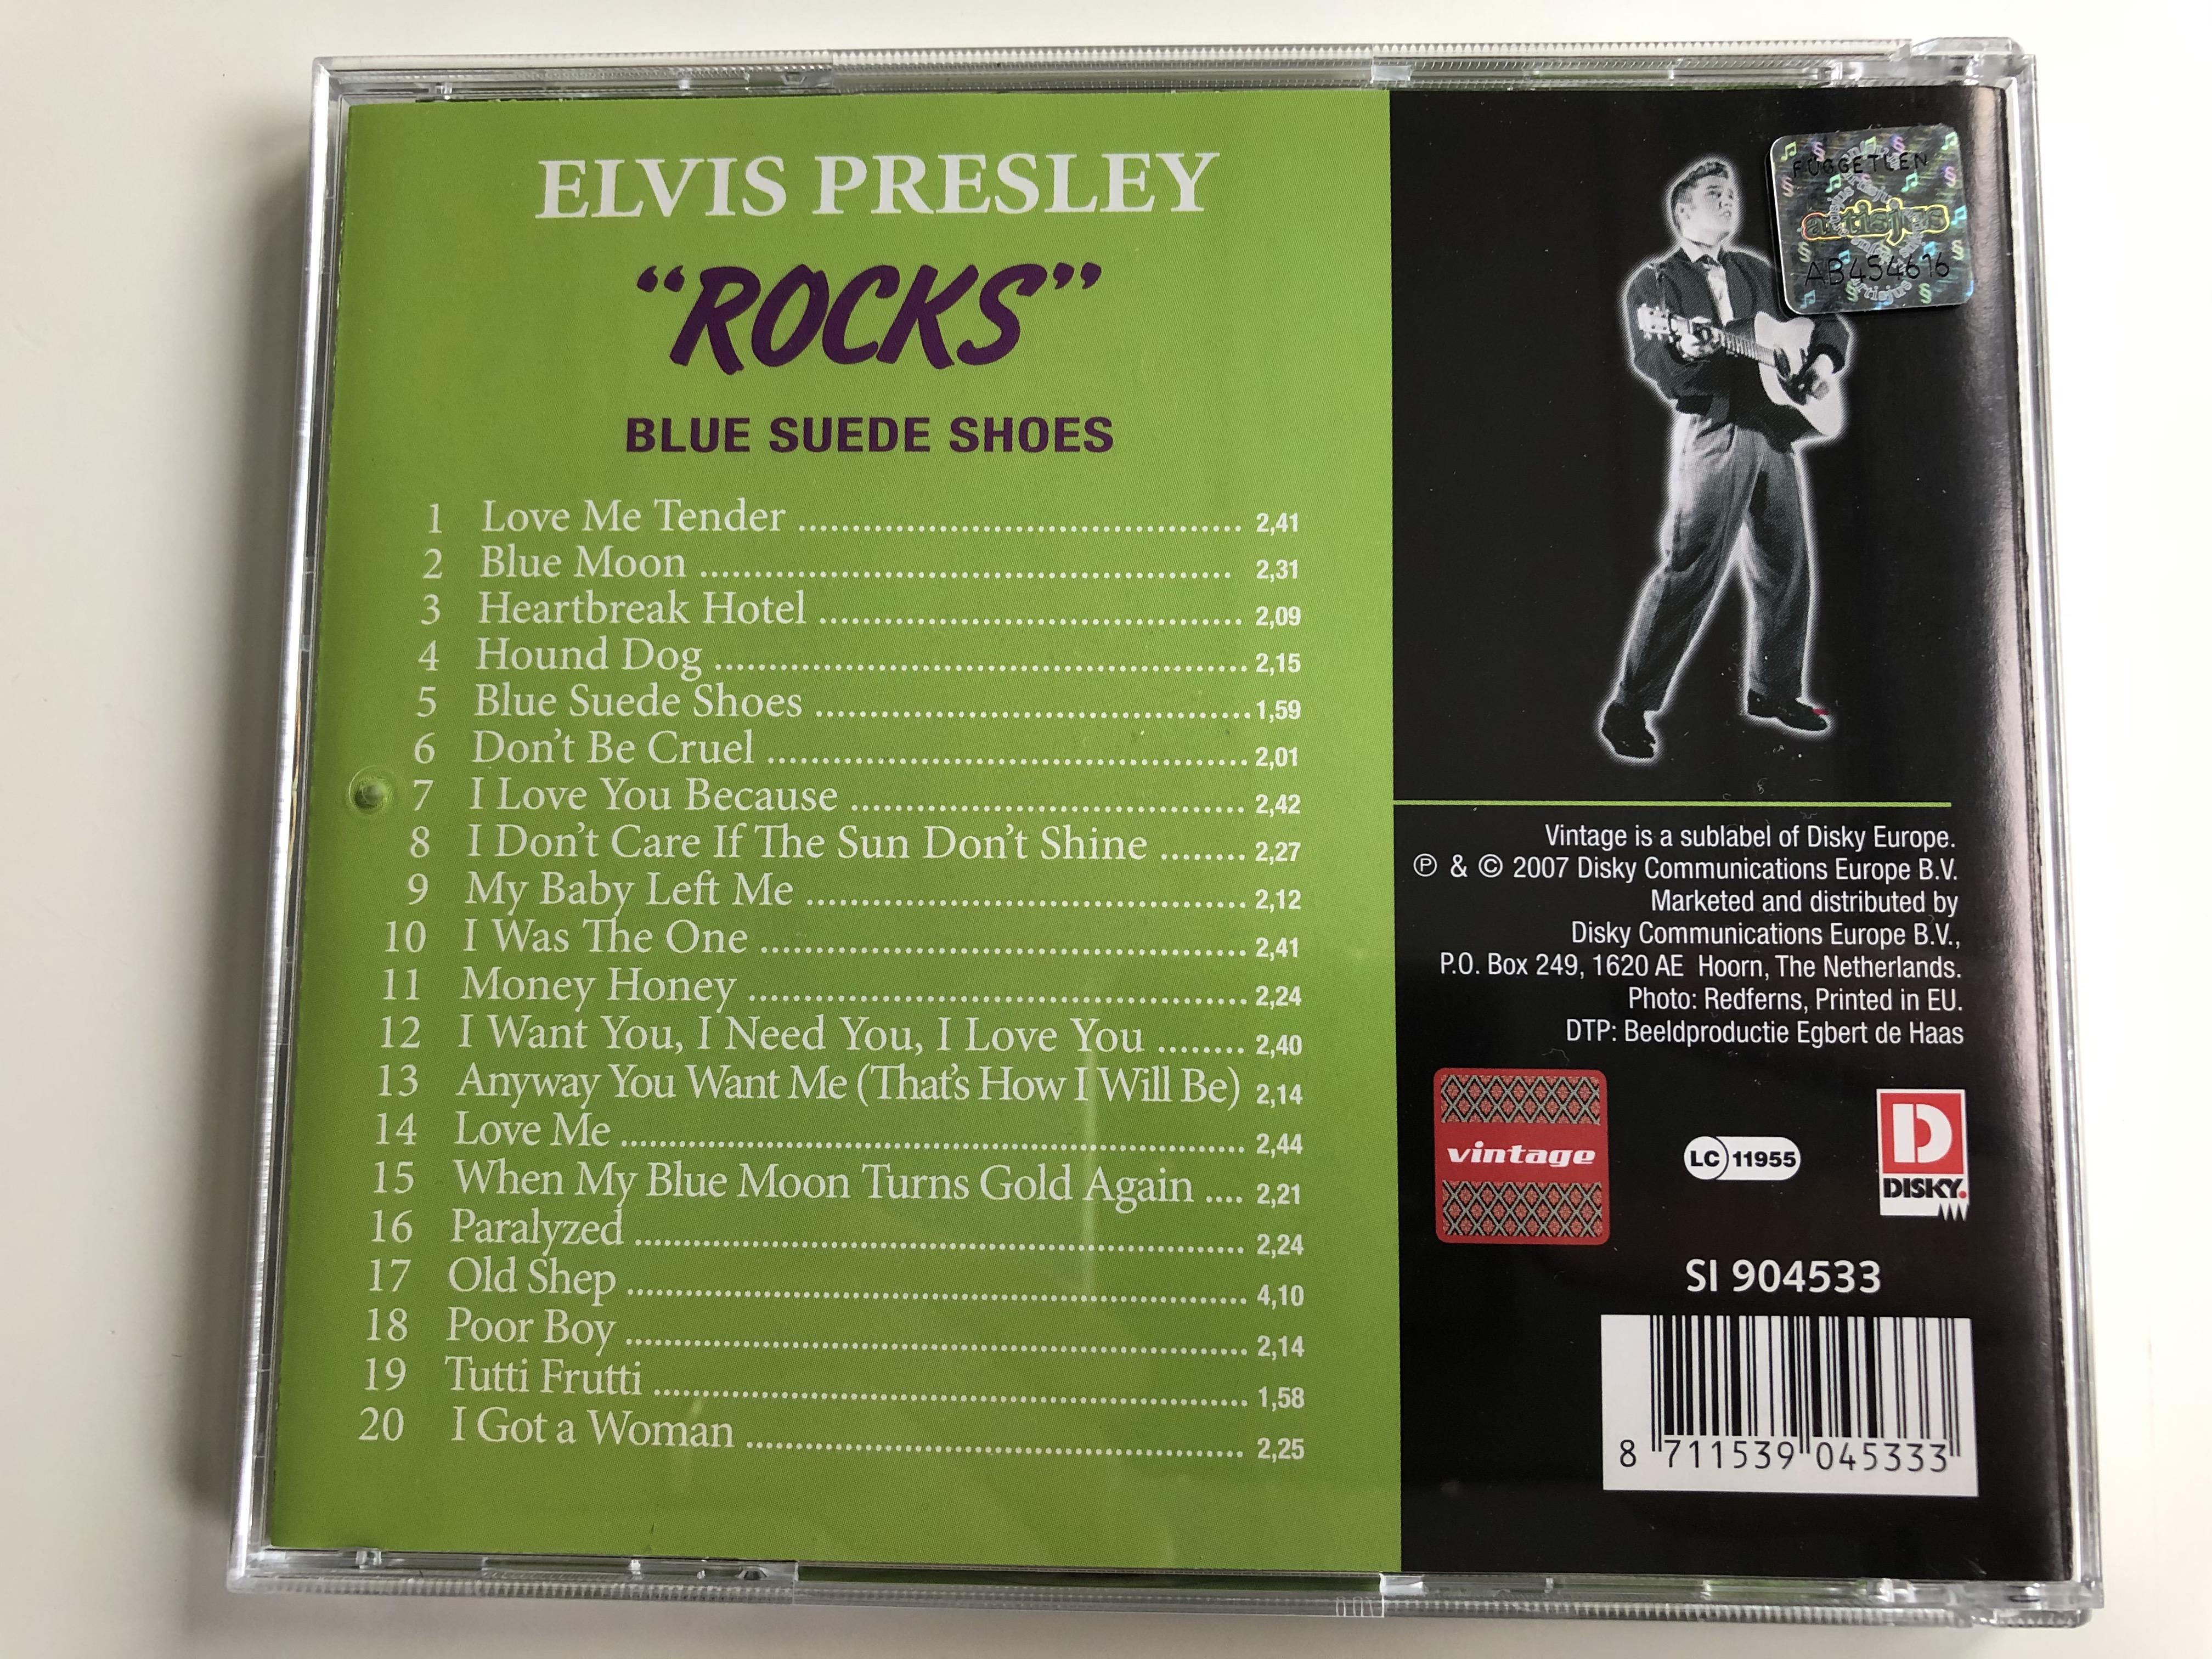 elvis-presley-rocks-blue-suede-shoes-original-artist-original-songs-disky-audio-cd-2007-si-904533-4-.jpg